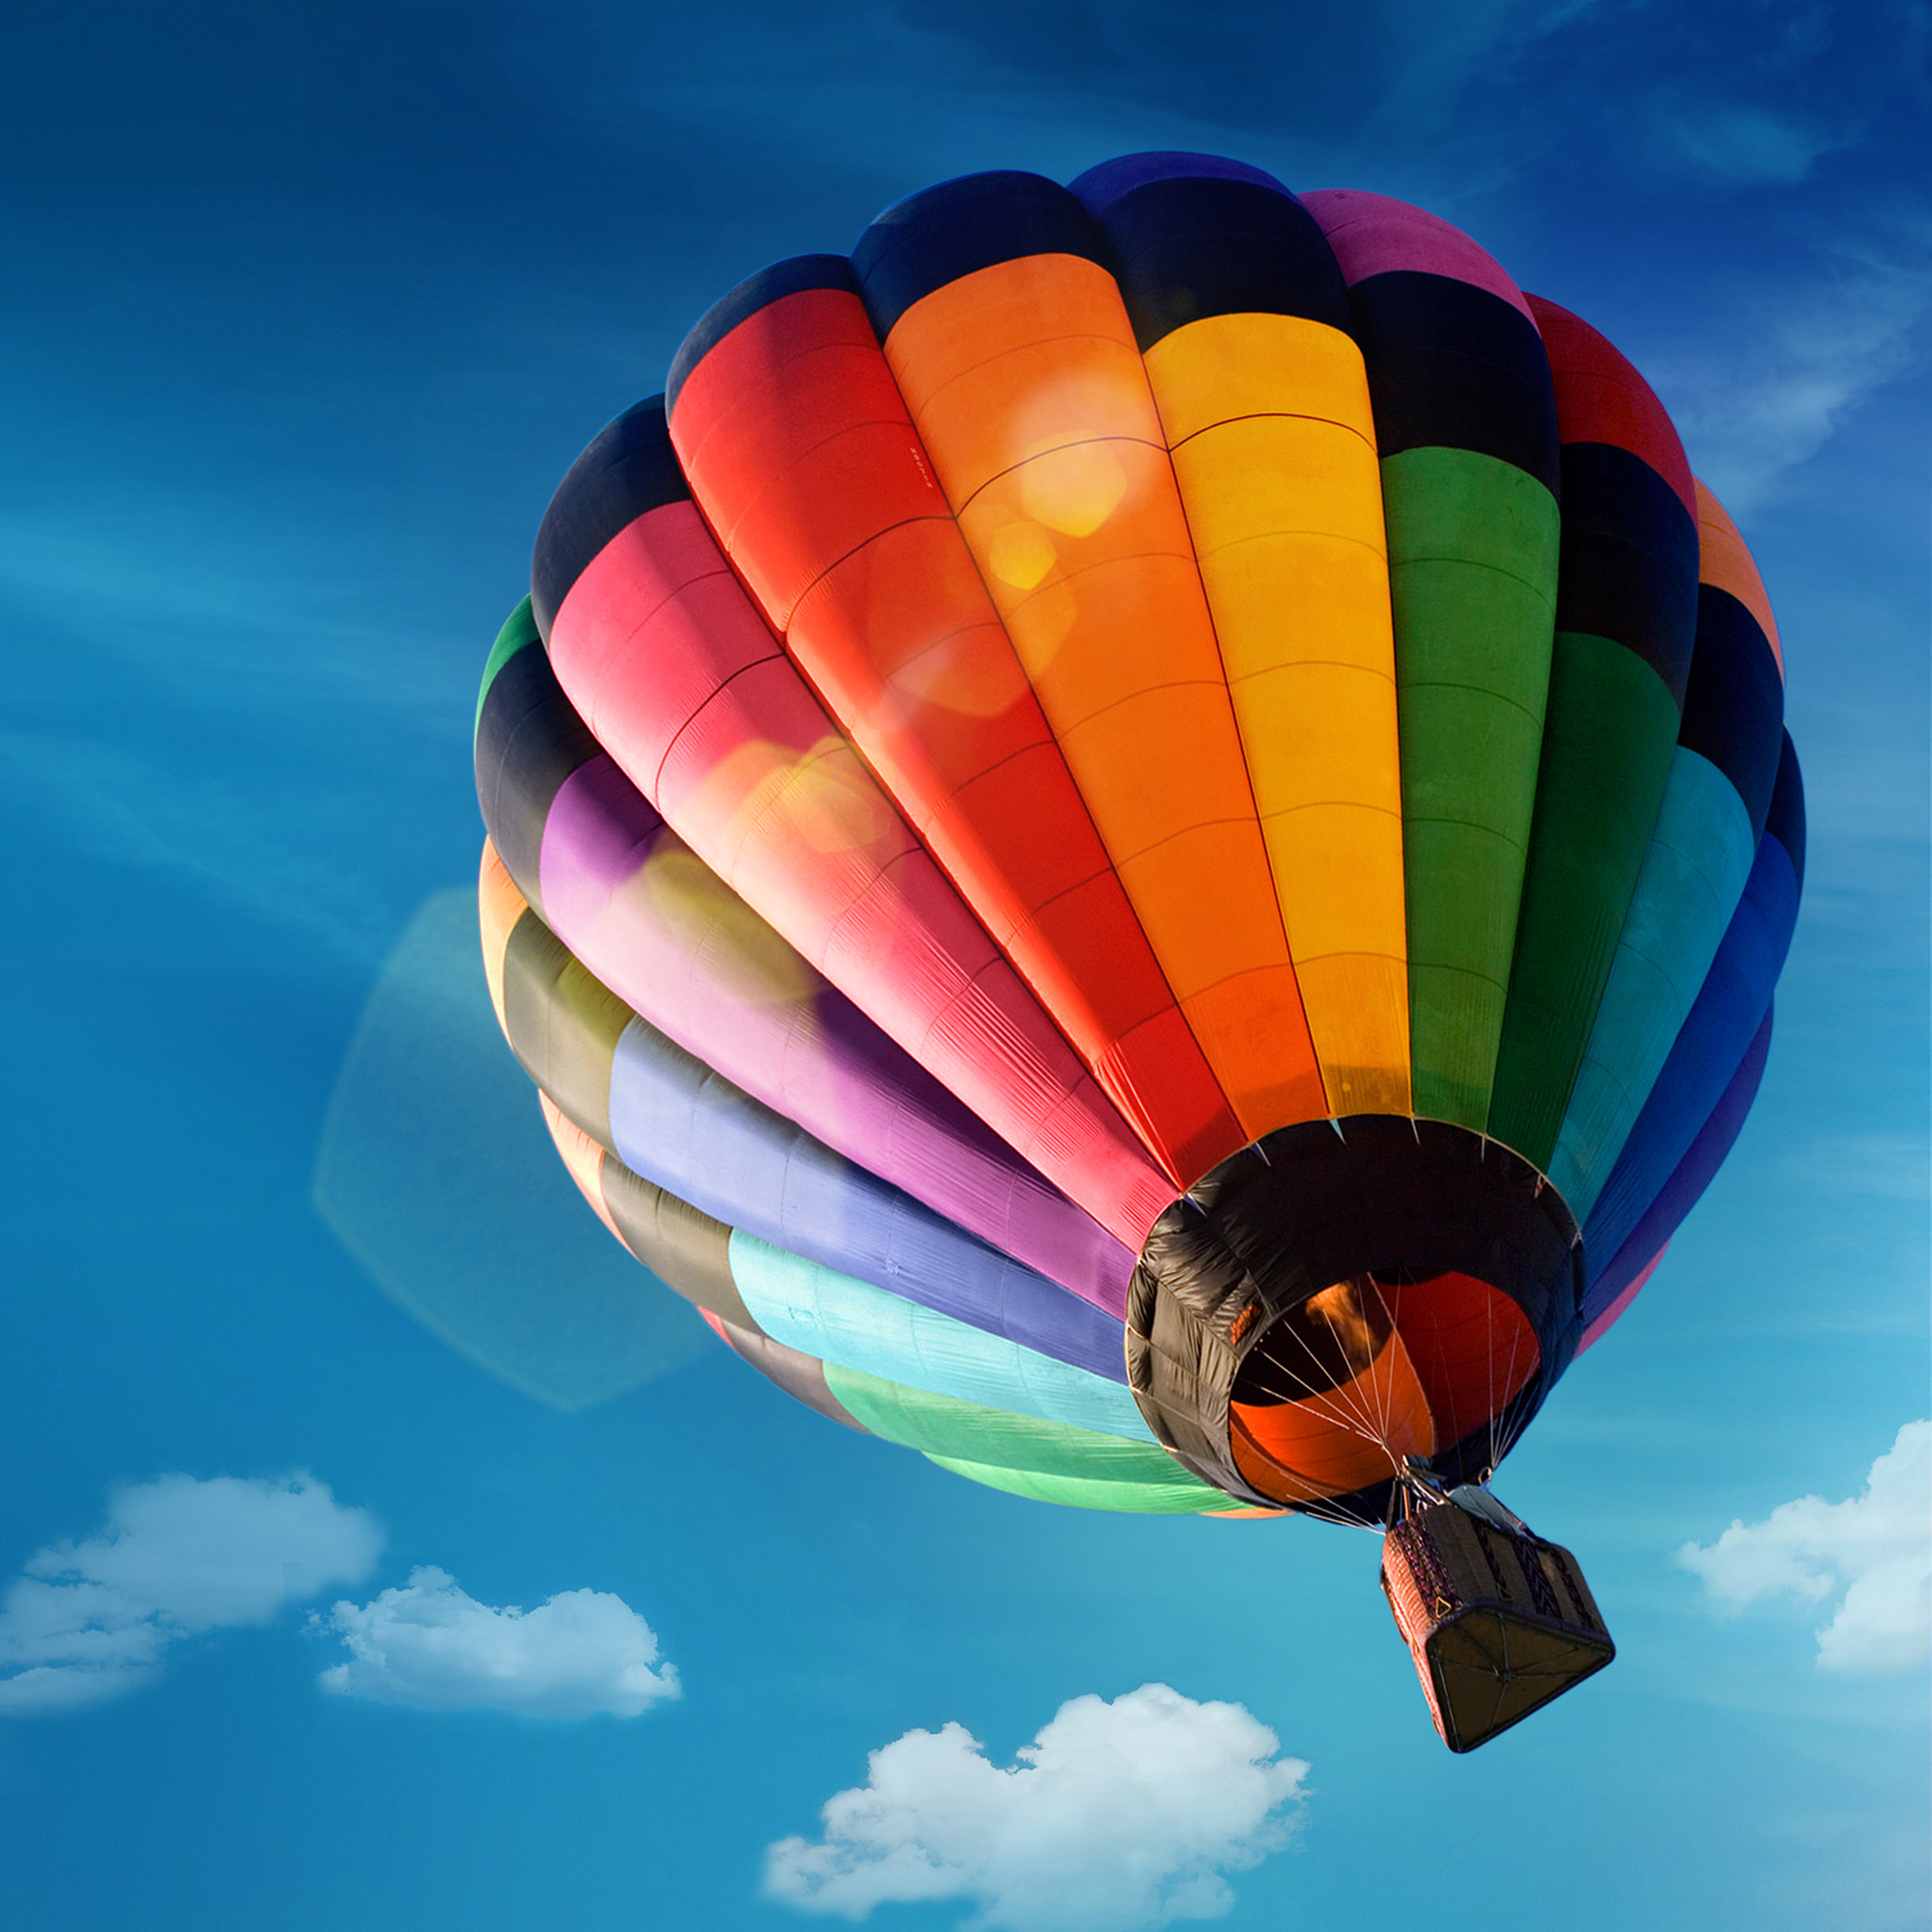 samsung original wallpaper download,hot air ballooning,hot air balloon,air sports,sky,vehicle